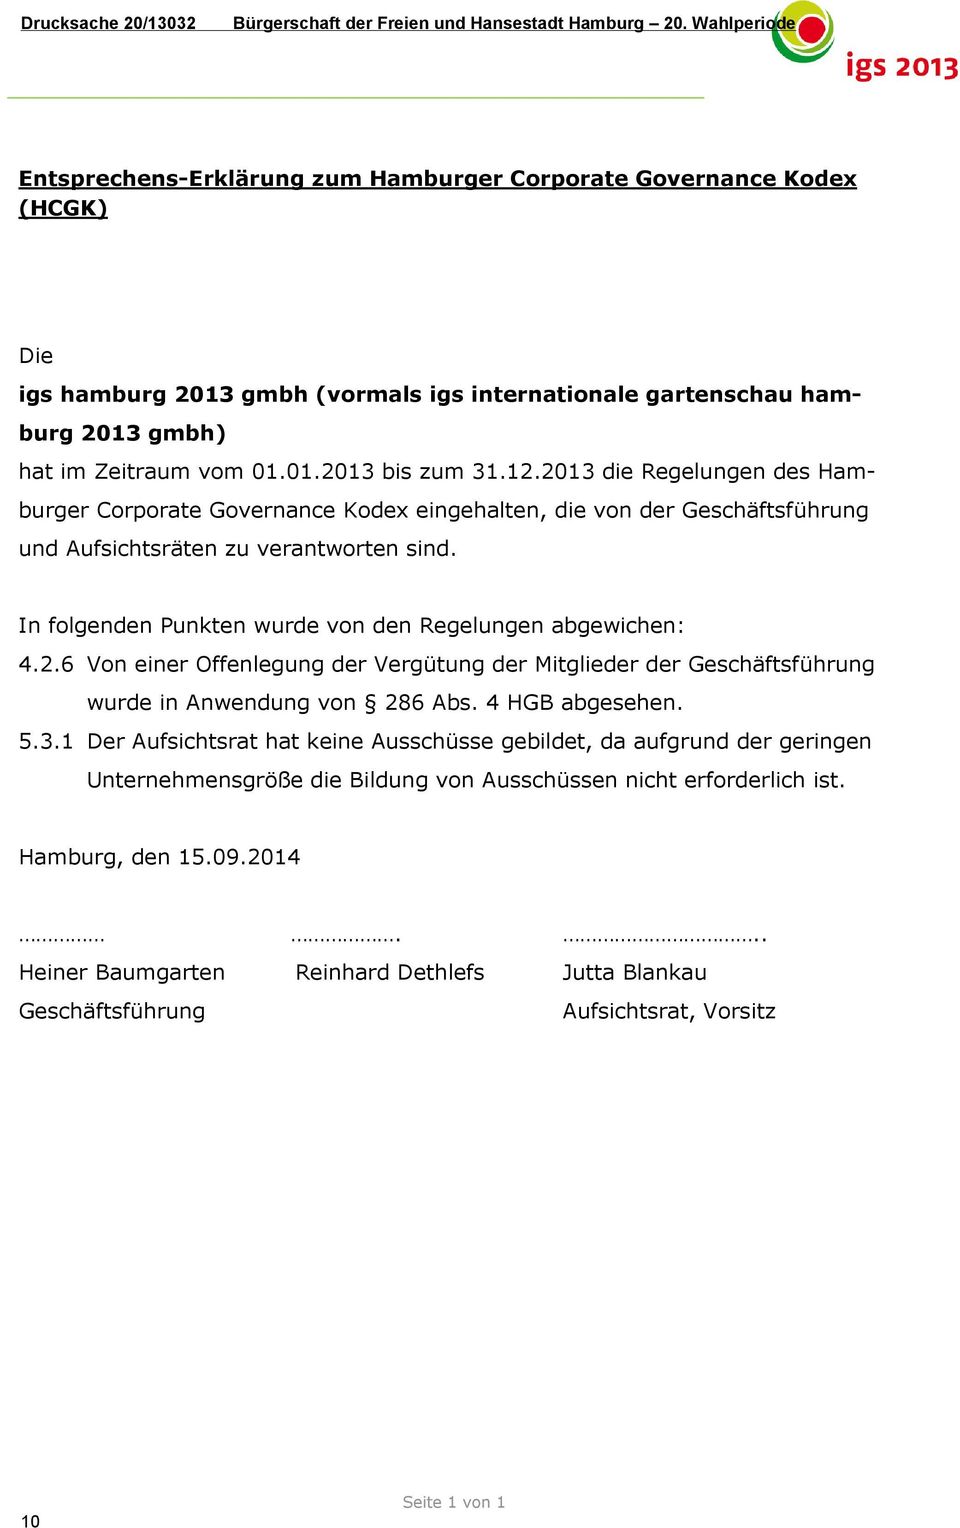 12.2013 die Regelungen des Hamburger Corporate Governance Kodex eingehalten, die von der Geschäftsführung und Aufsichtsräten zu verantworten sind.